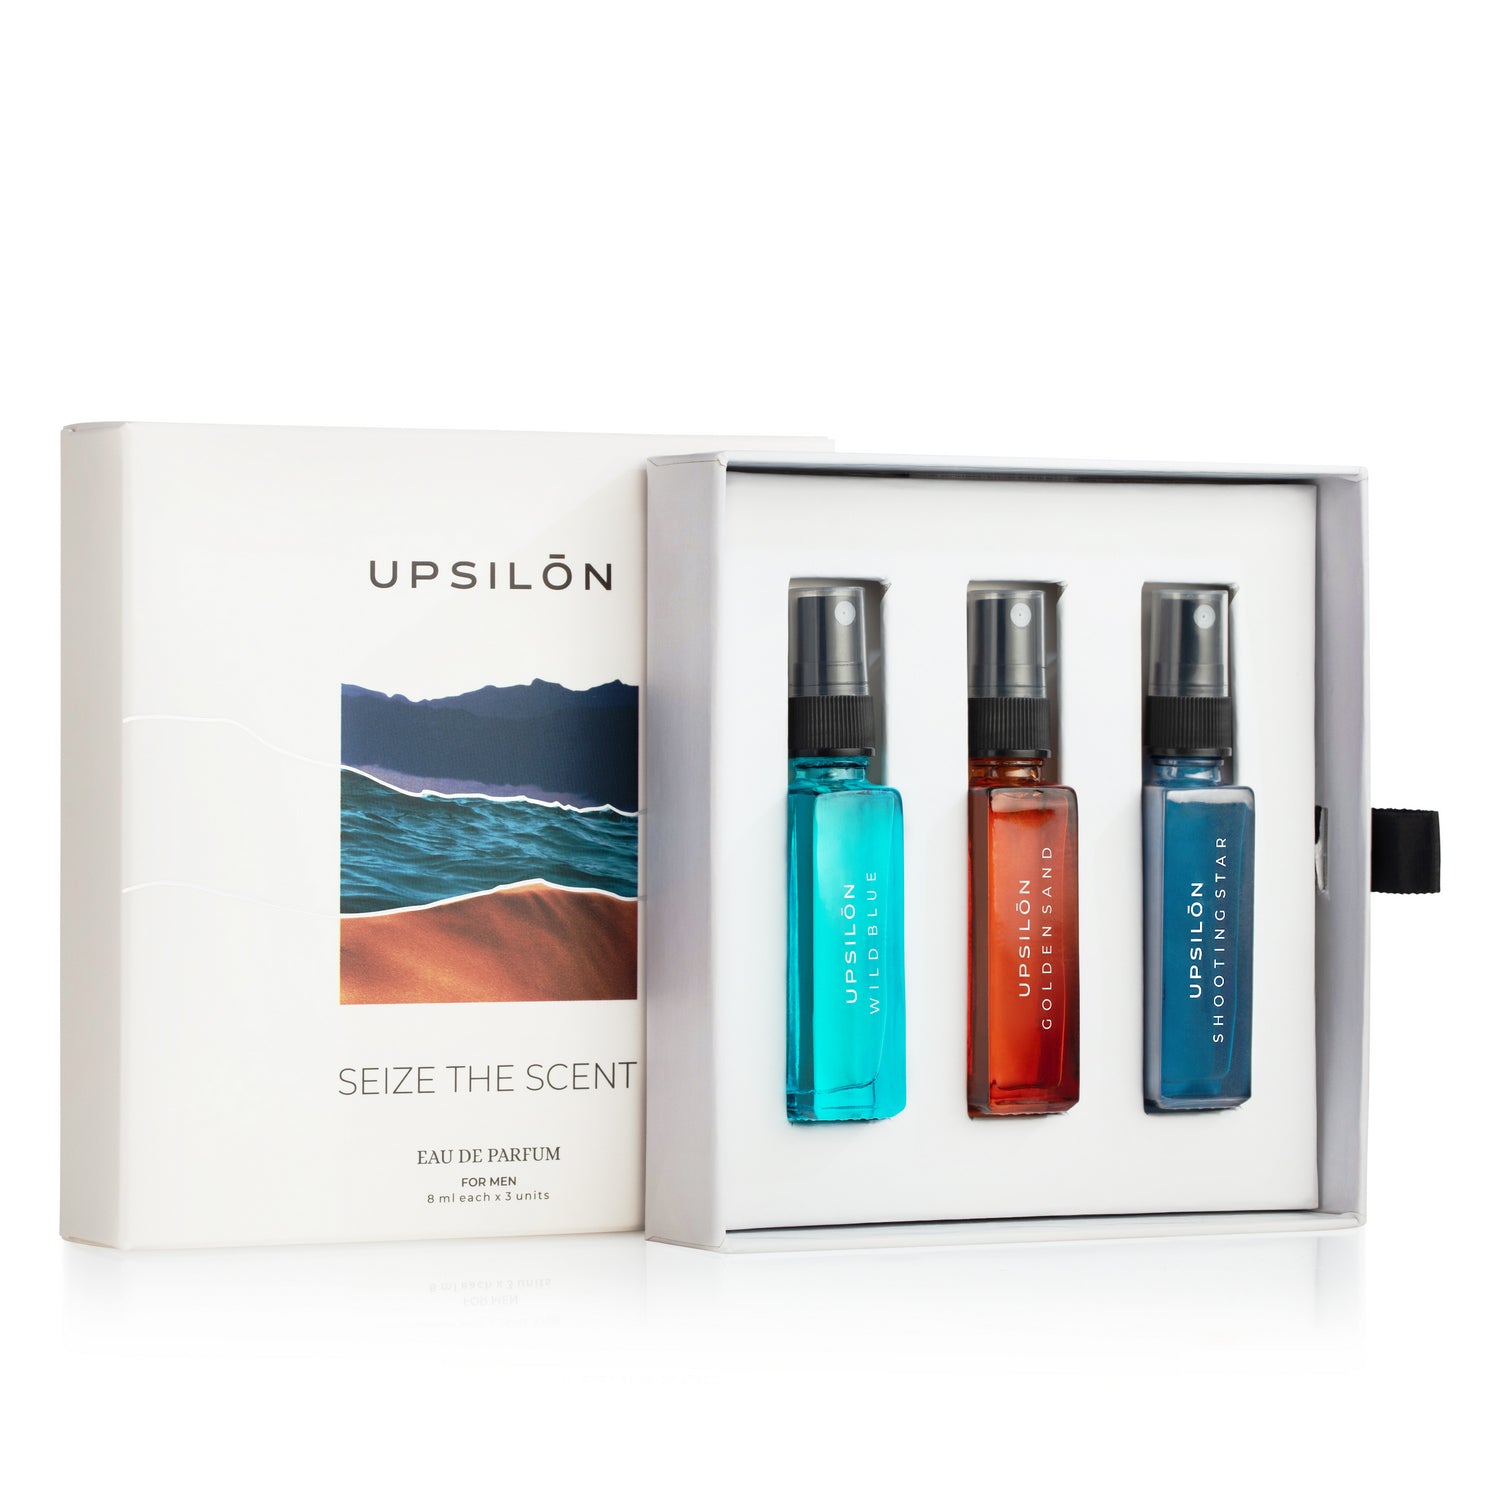 UPSILON Seize The Scent Men Eau De Parfume - 8ml Each